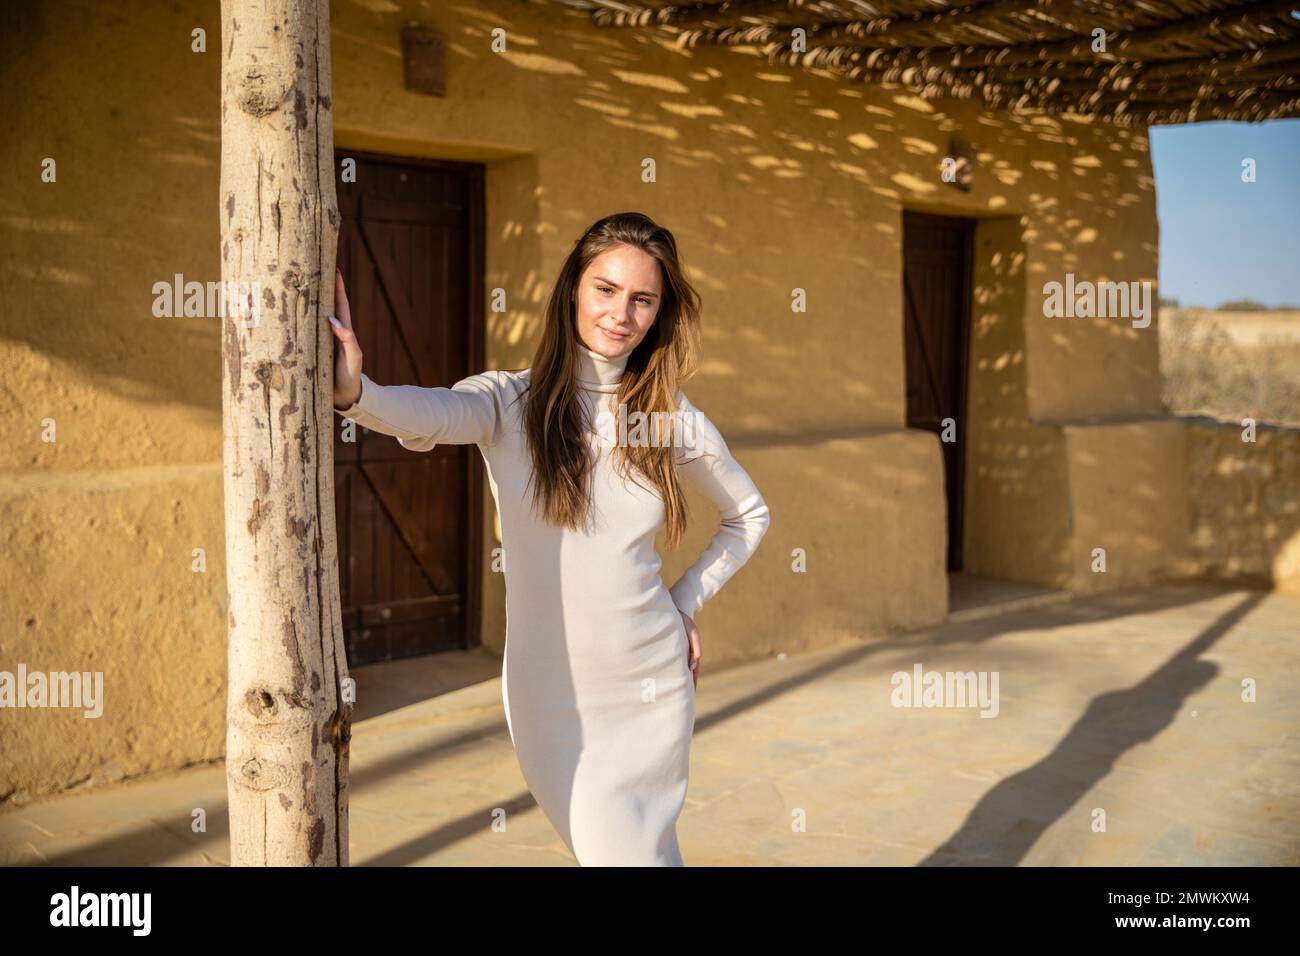 Junge Dame, die im Wadi El Rayan in der Westwüste Ägyptens posiert Stockfoto